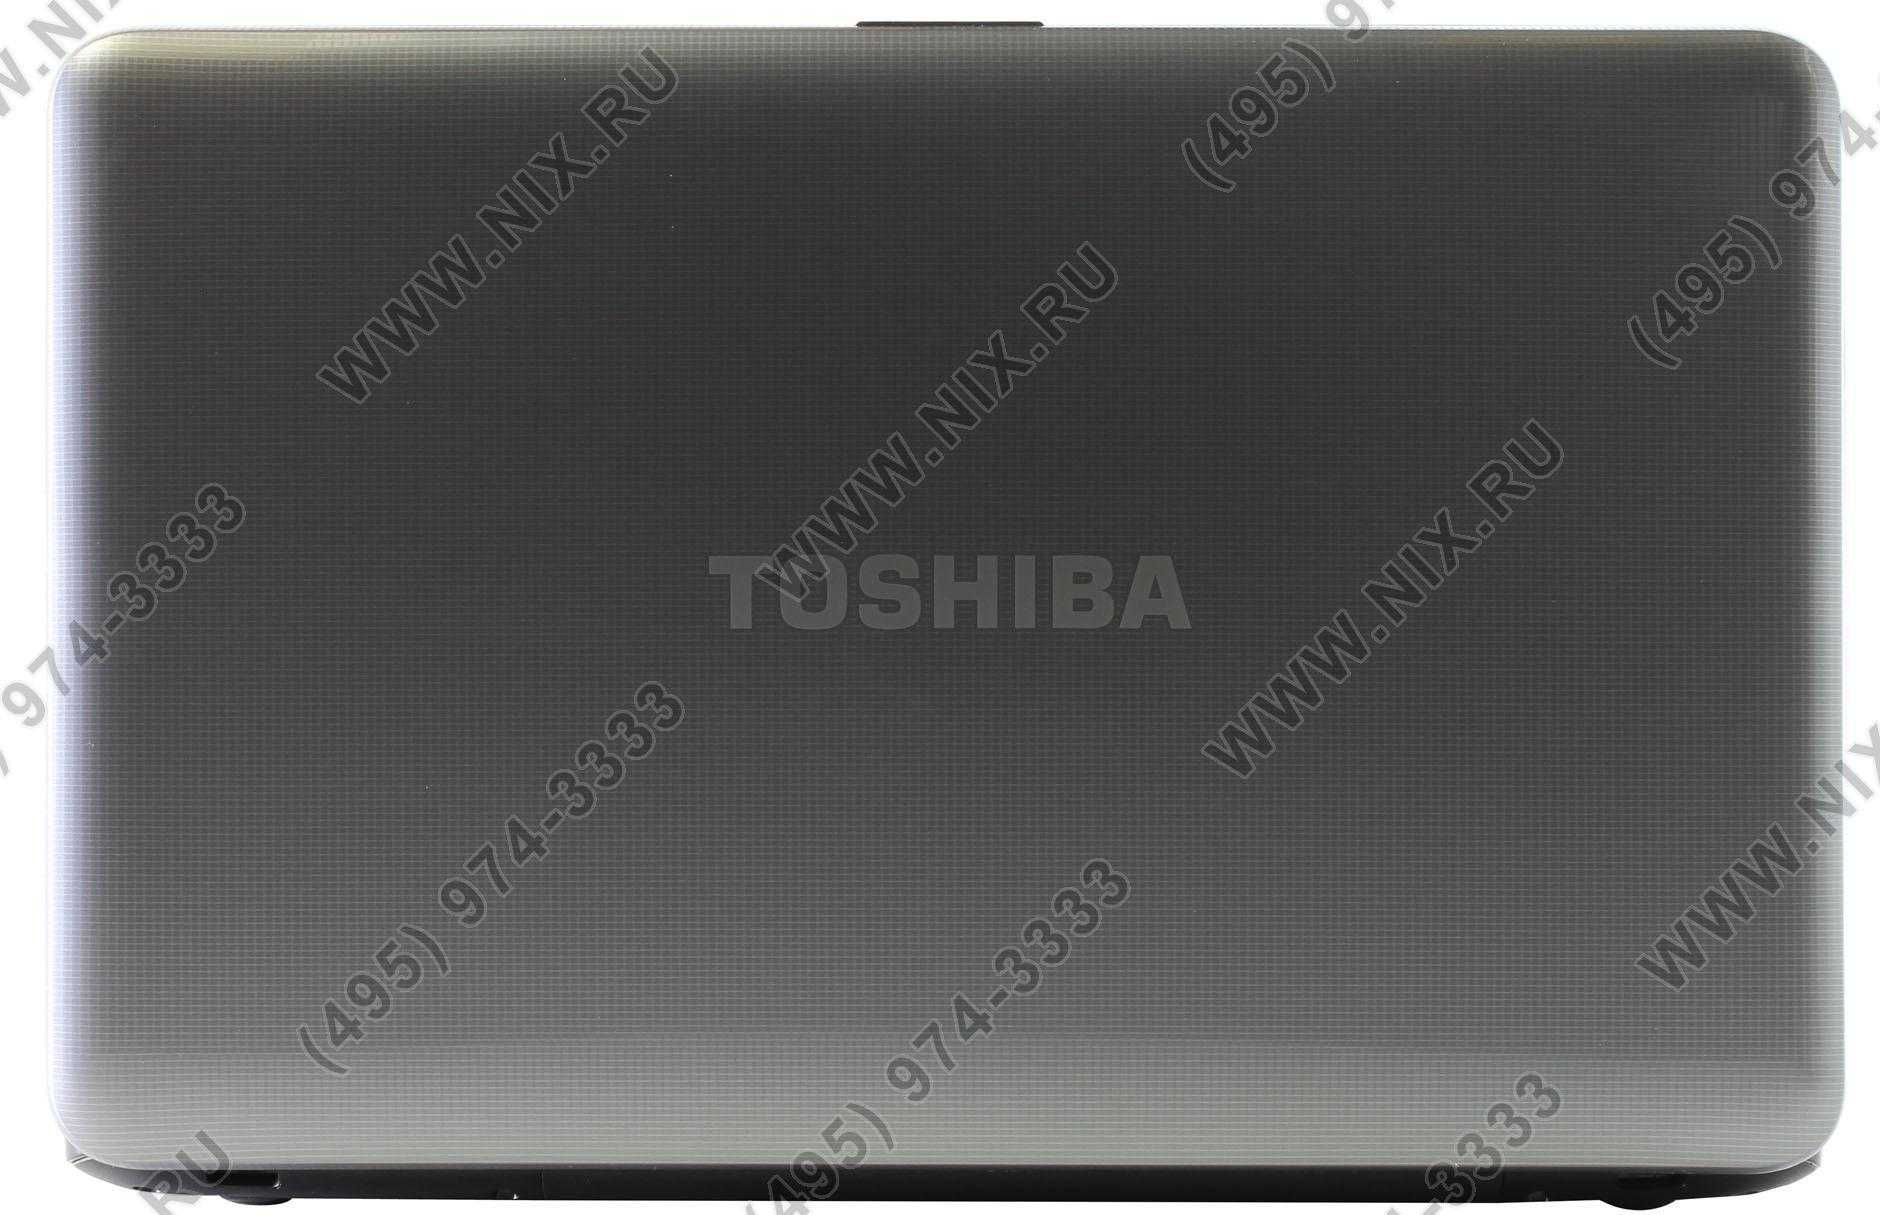 Ноутбук Toshiba Satellite L850 (05V01N) - подробные характеристики обзоры видео фото Цены в интернет-магазинах где можно купить ноутбук Toshiba Satellite L850 (05V01N)